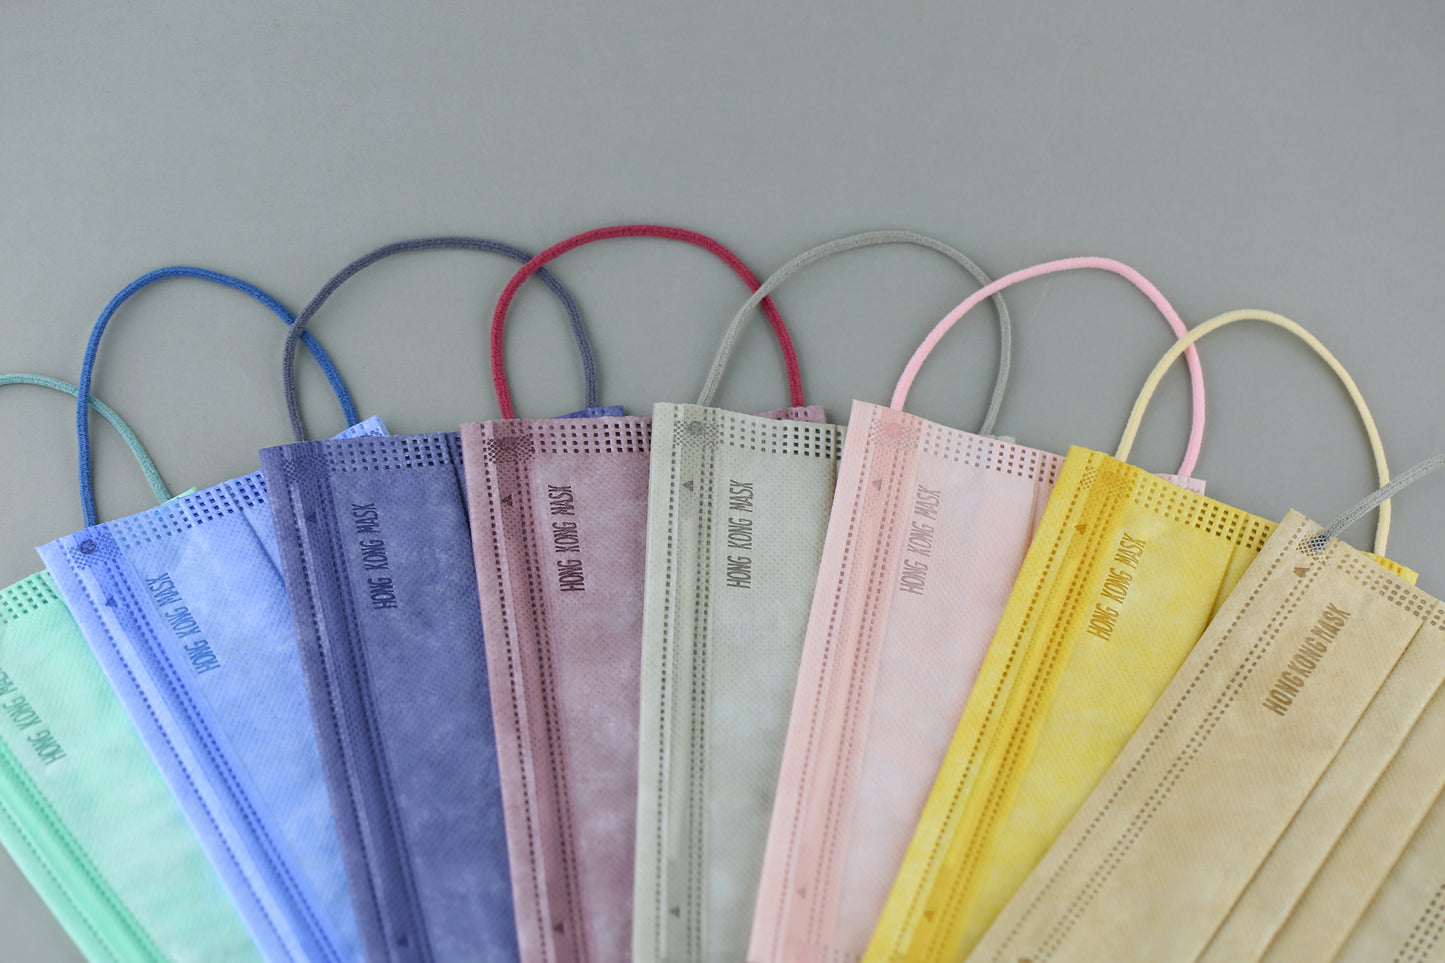 【夏日優惠】8 New Pantone Colors, EN14683 Type IIR | ASTM Level 3 (50 pcs)【 Made in HongKong 】